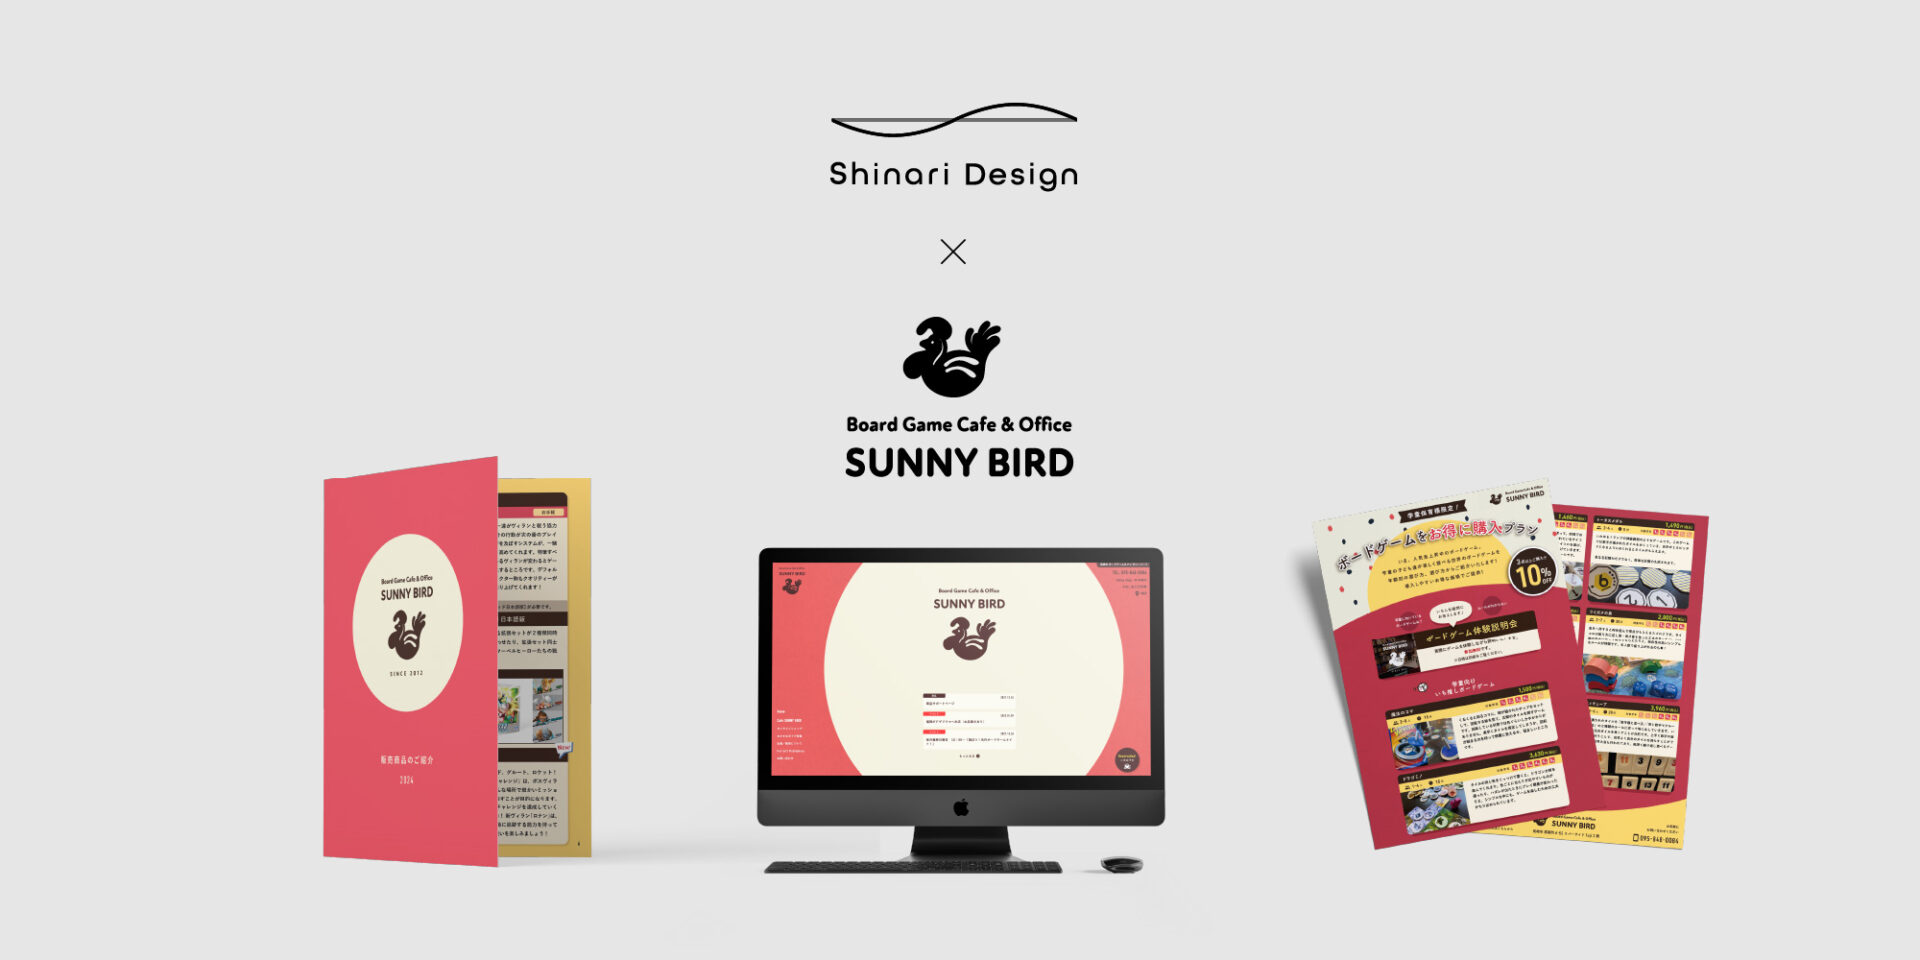 Shinari Designの定額デザイン支援。ボードゲームカフェ Sunnybird様の事例